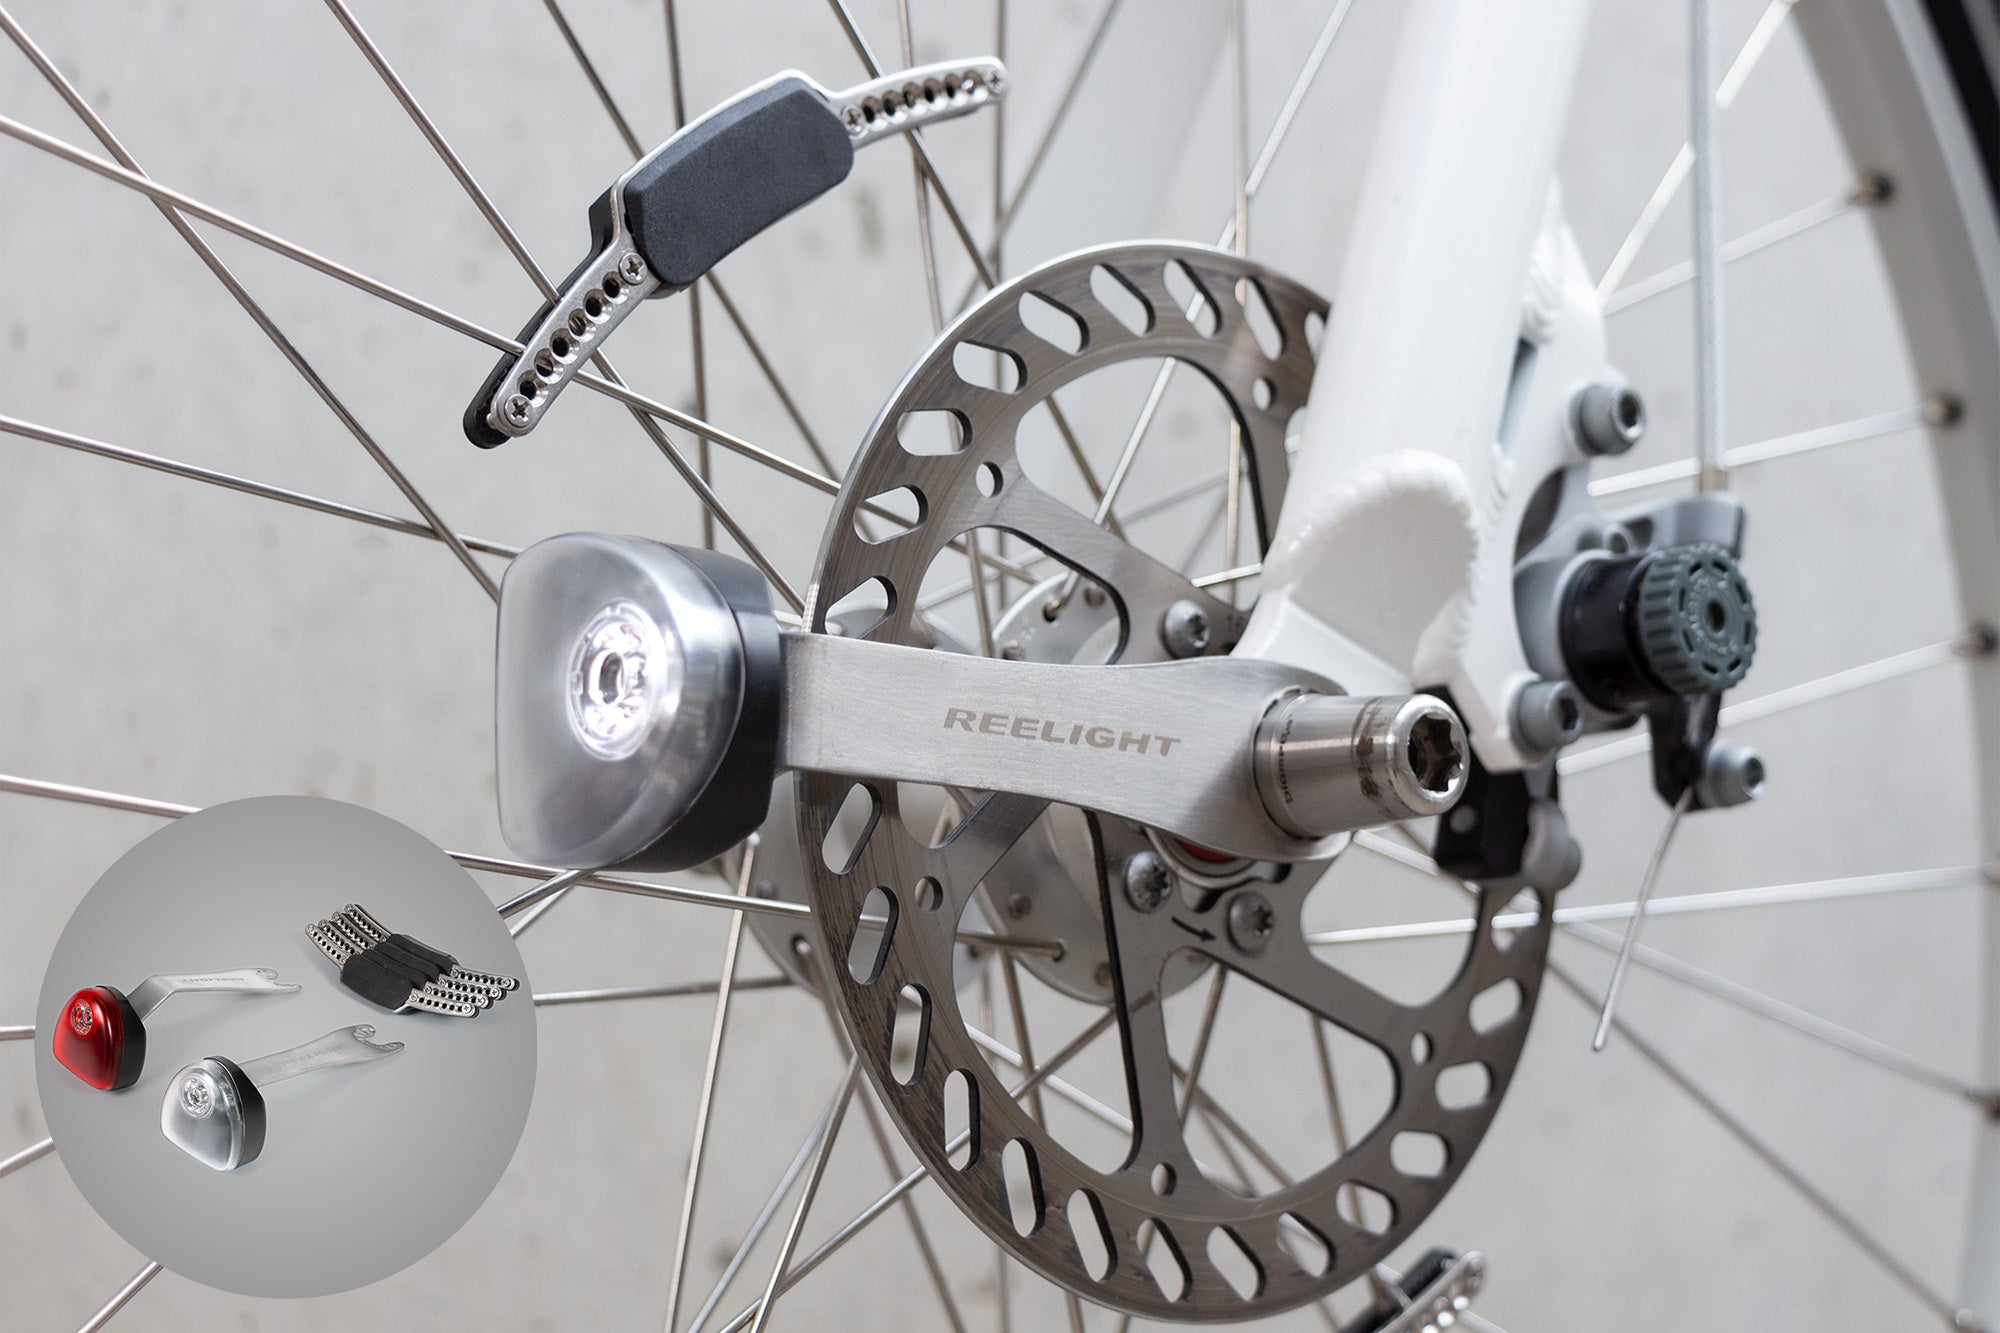 Reelight, Magnetic Bike Lights for Disc Brakes